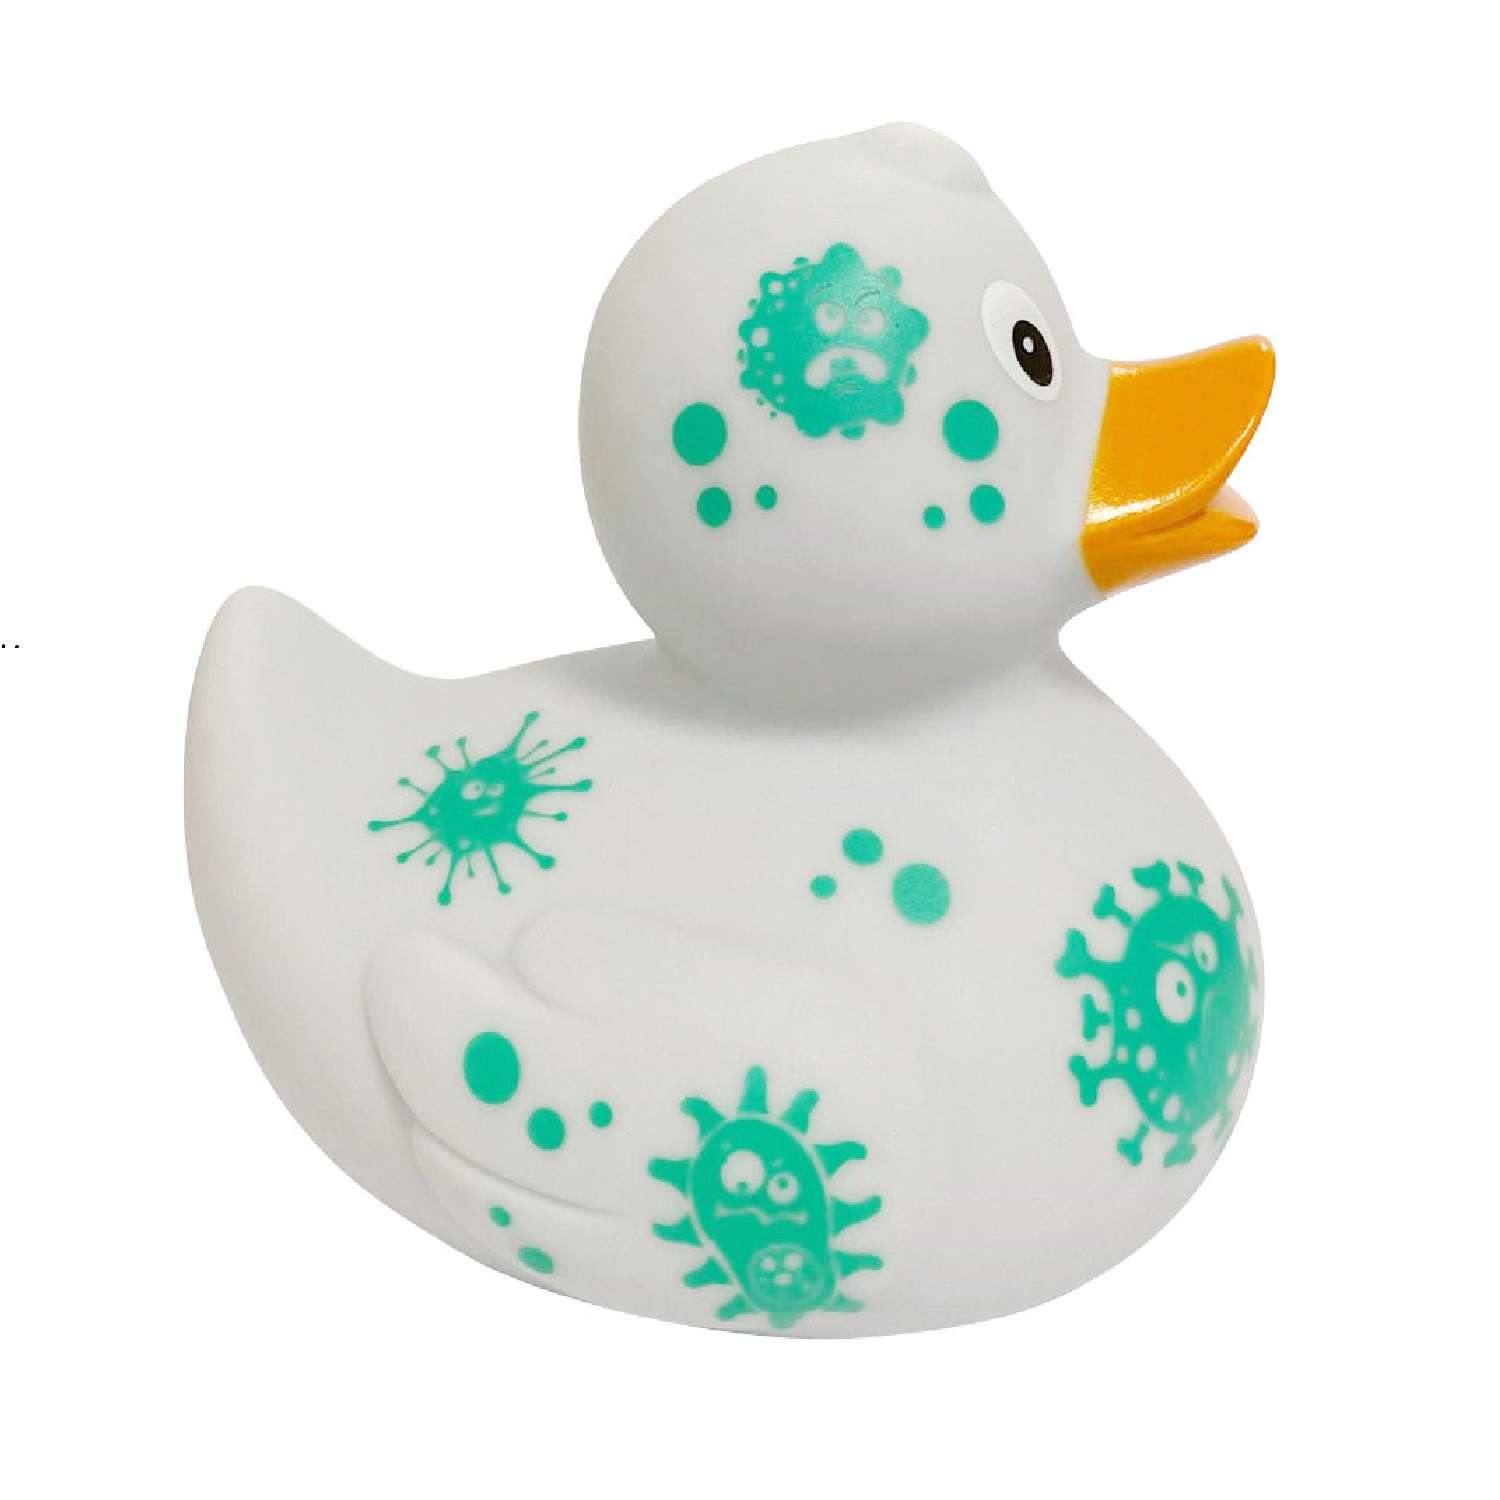 Игрушка Funny ducks для ванной Вирус уточка 1308 - фото 3